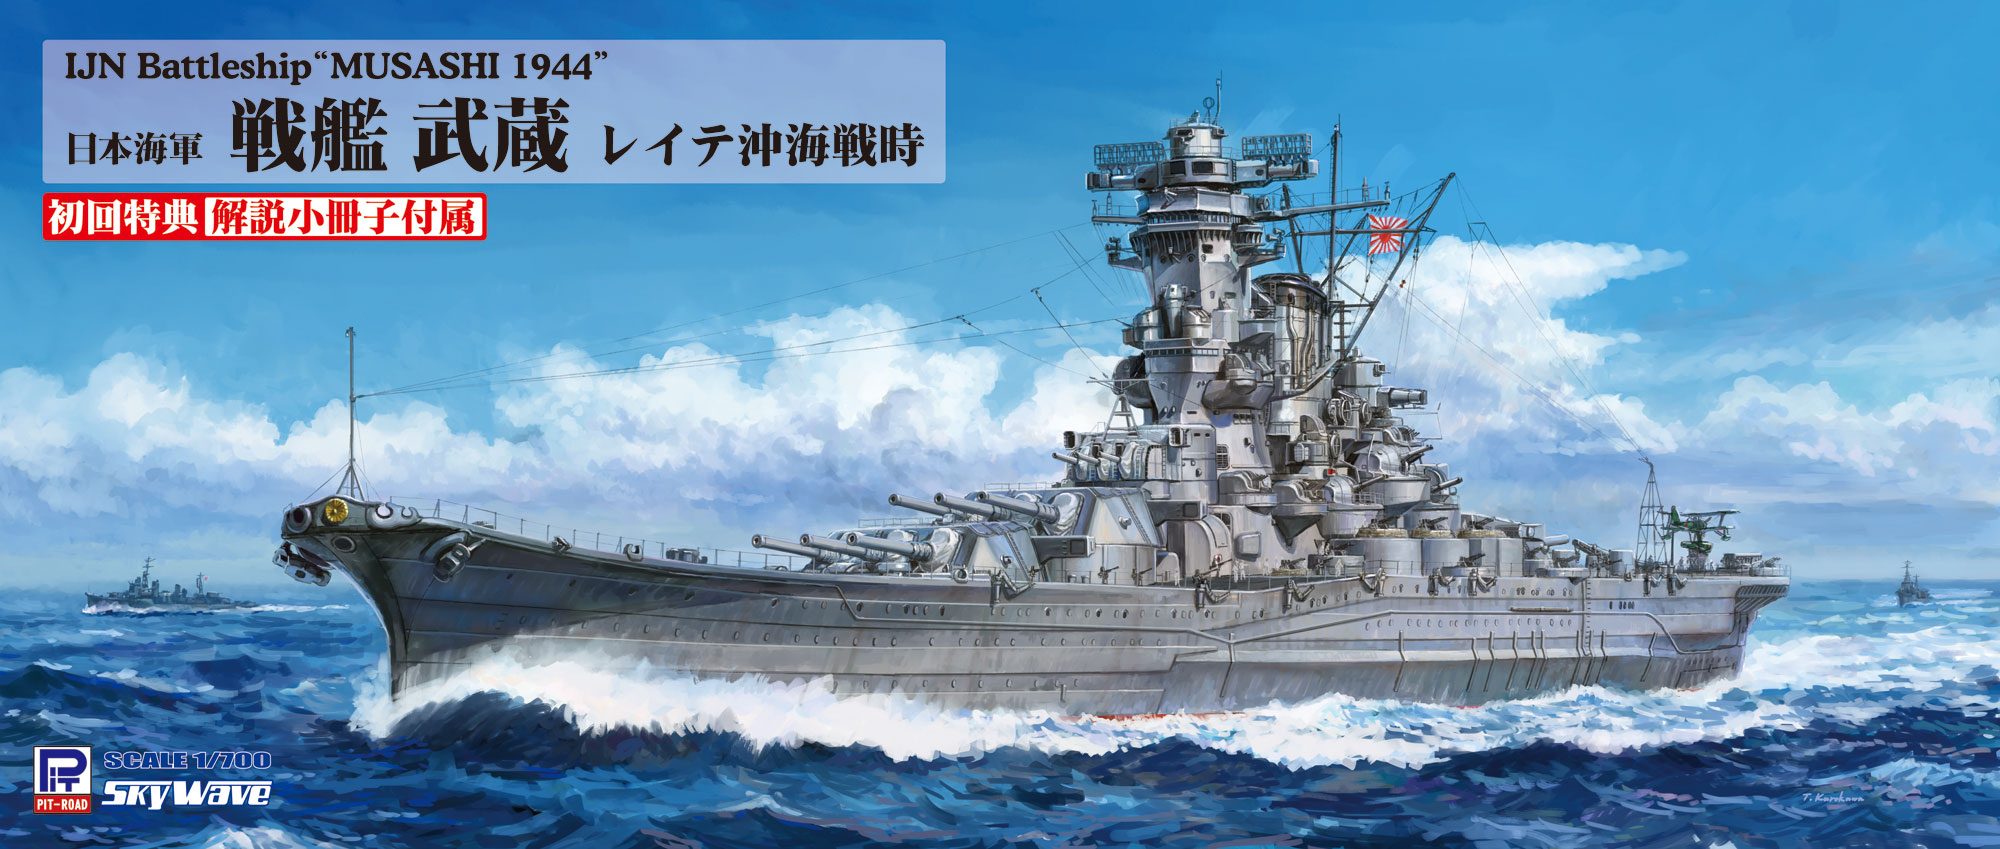 1/700 日本海軍 戦艦 武蔵 レイテ沖海戦時 [W201] - 5,720円 : ホビー